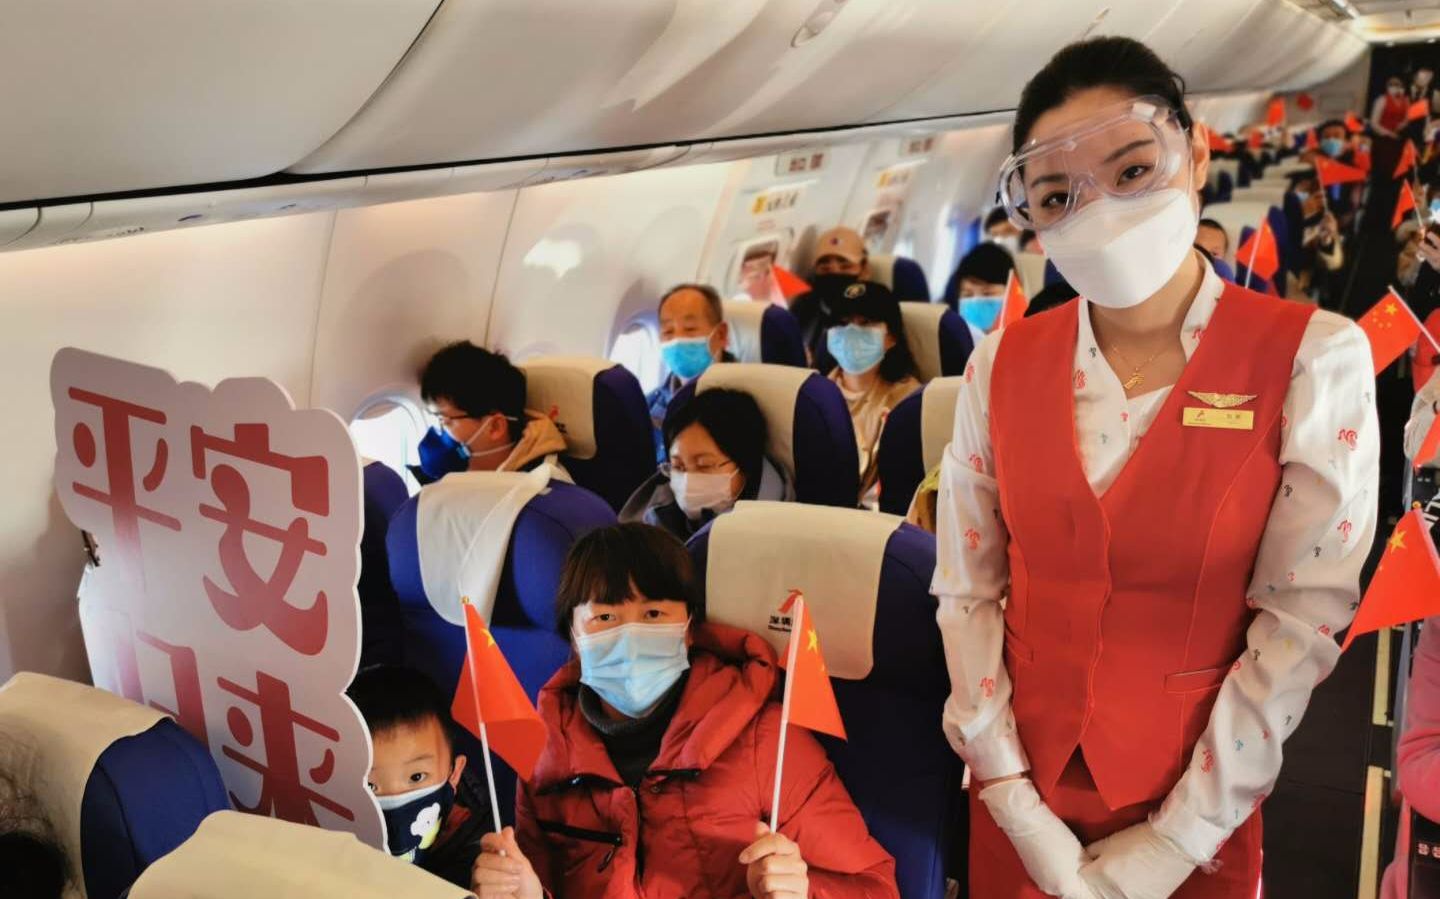 深圳航空ZH9338次航班搭载着151名乘客从湖北襄阳刘集机场起飞。深航供图